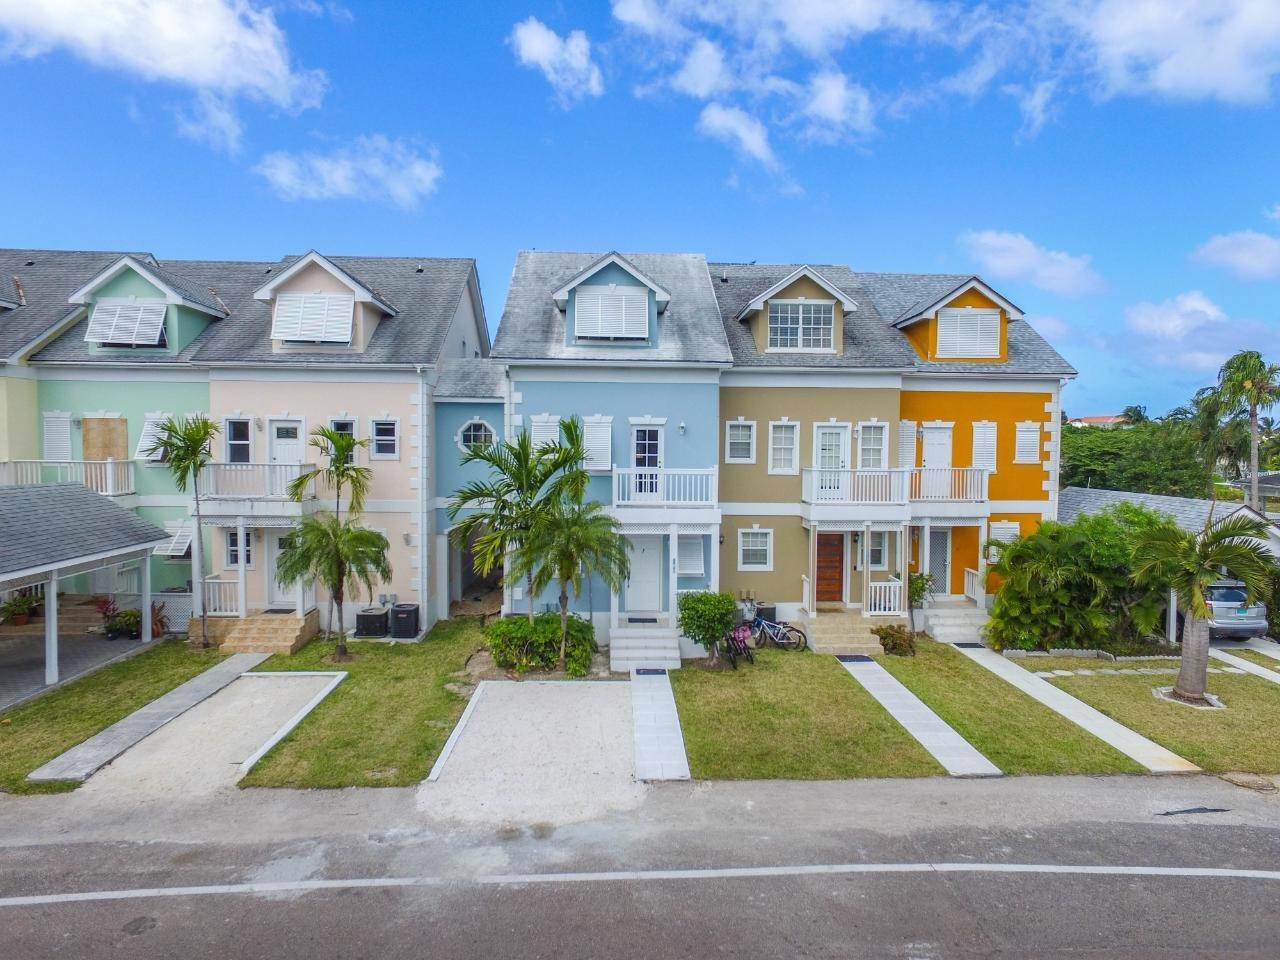 Condominiums 为 租房 在 Sandyport, Cable Beach, 新普罗维登斯/拿骚 巴哈马